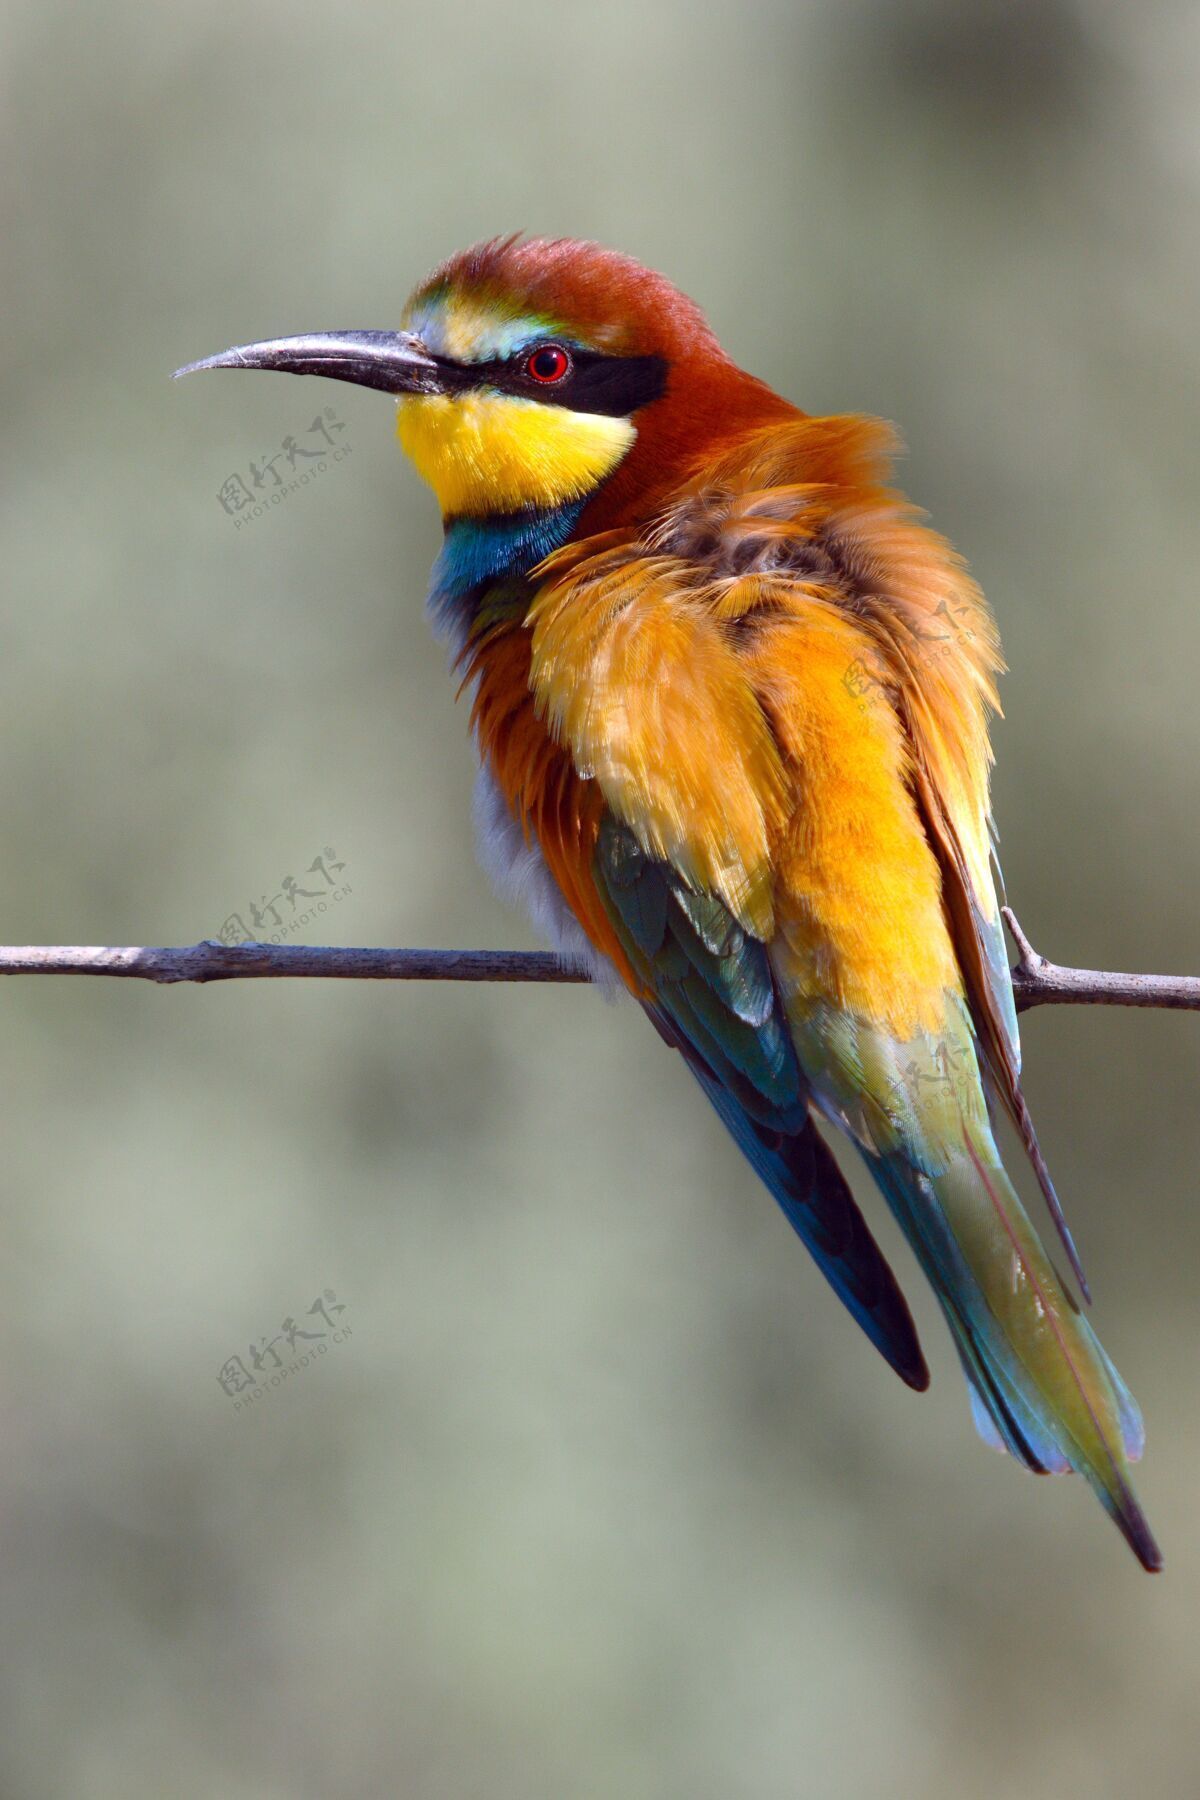 荒野可爱的食蜂鸟彩色的小鸟坐在树枝上 背景模糊野生动物翅膀鸟类